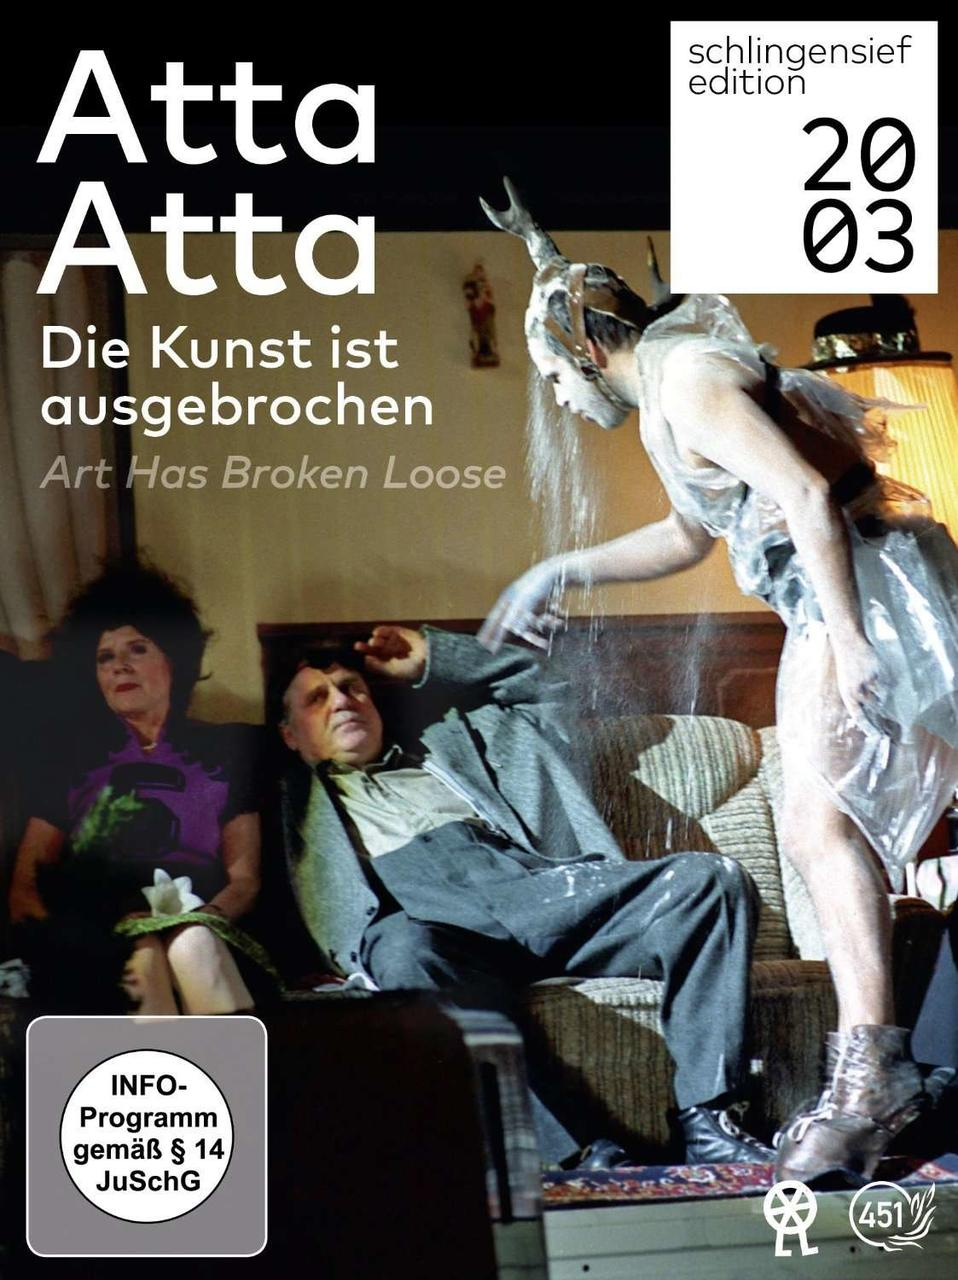 Atta Atta - DVD Die ausgebrochen / has broken Art loose ist Kunst